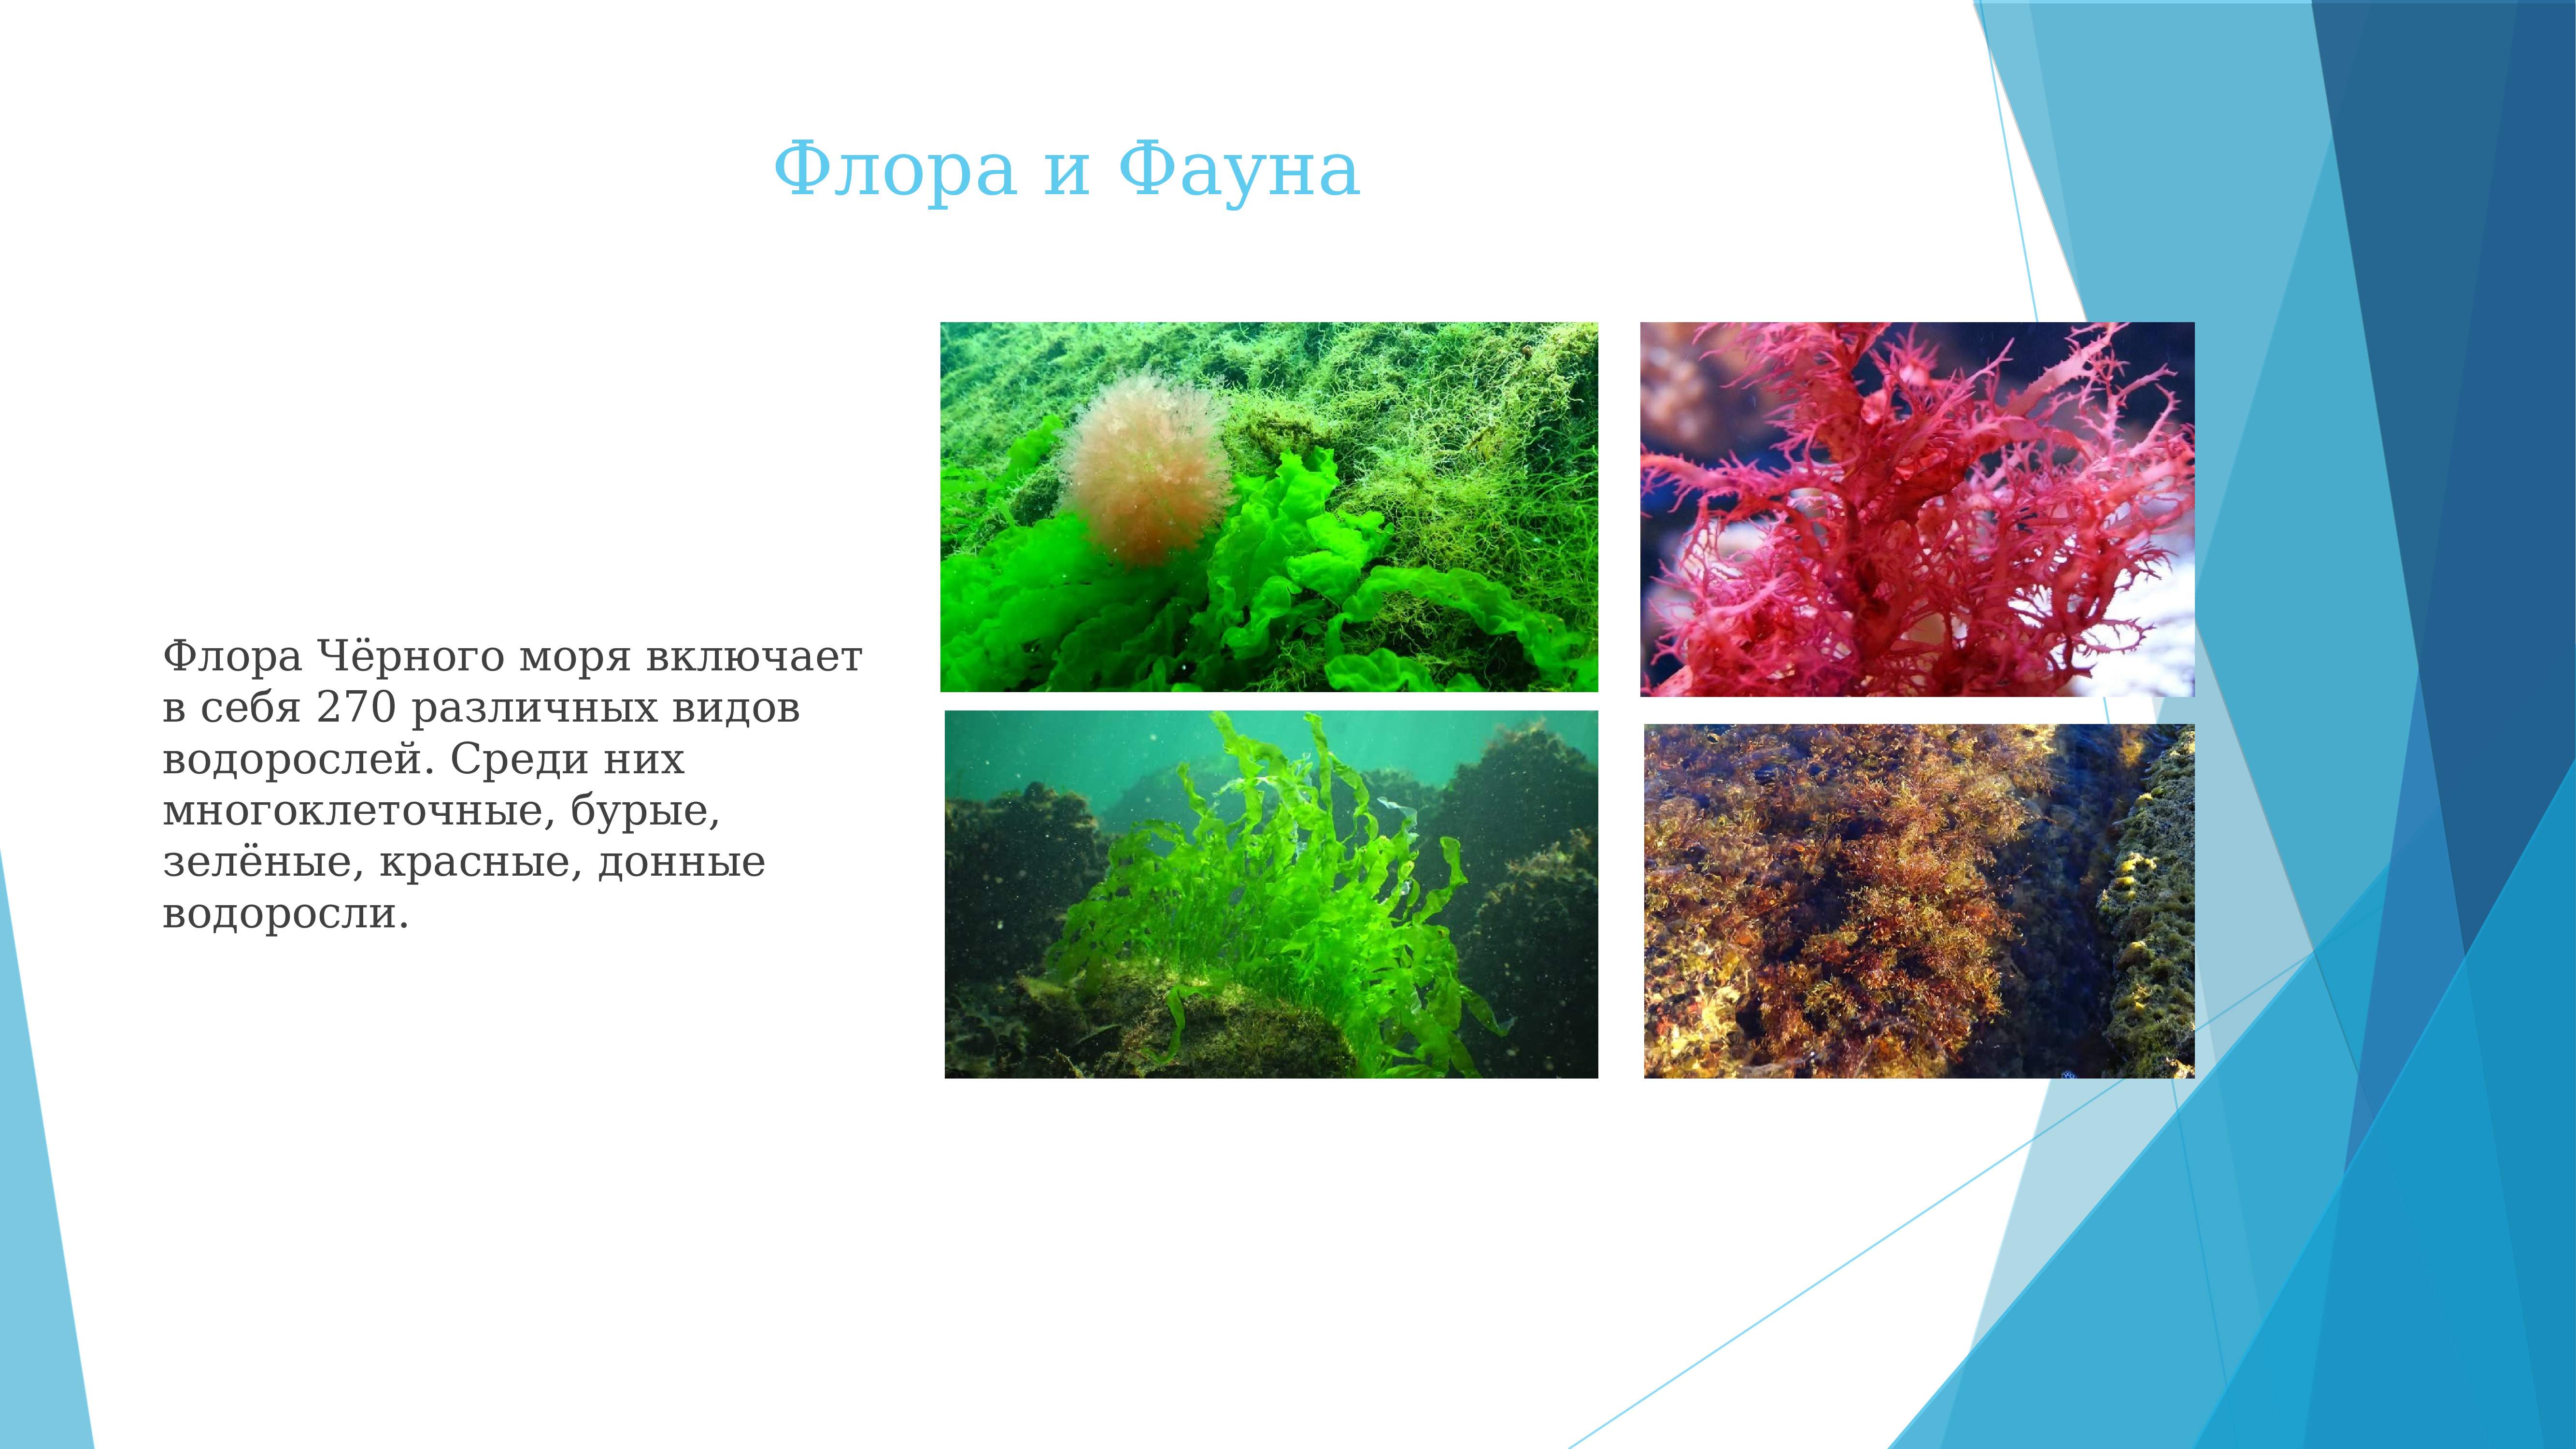 Флора и фауна черного моря кратко